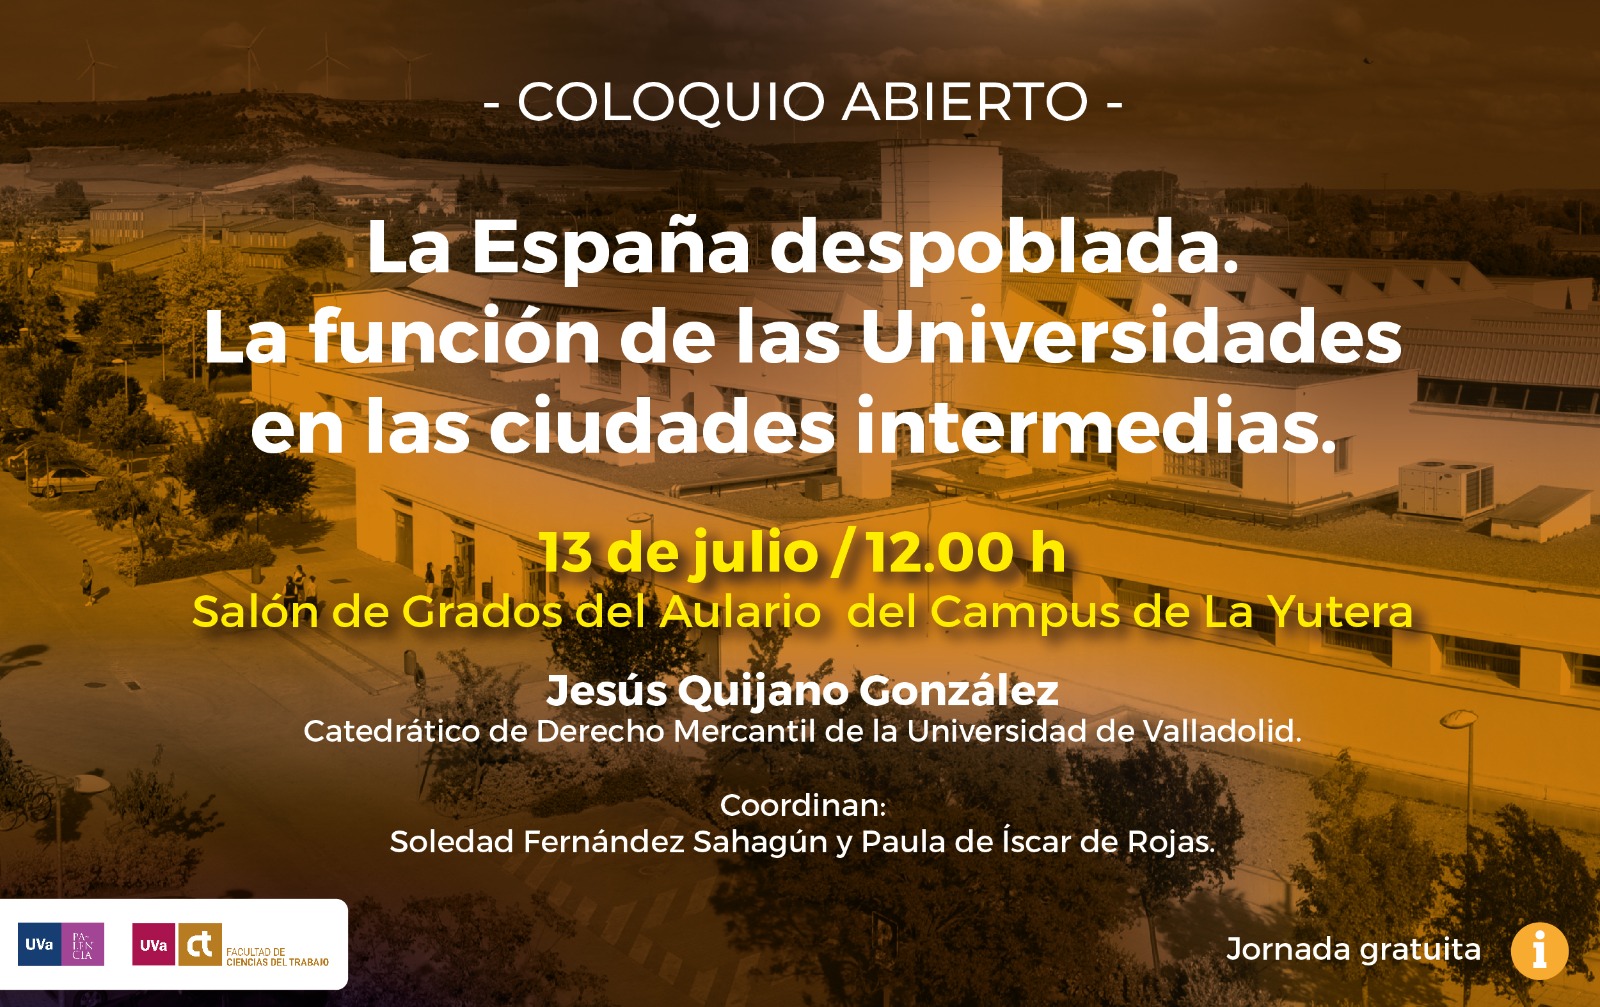 Coloquio-abierto-La-Espana-despoblada-Campus-Palencia